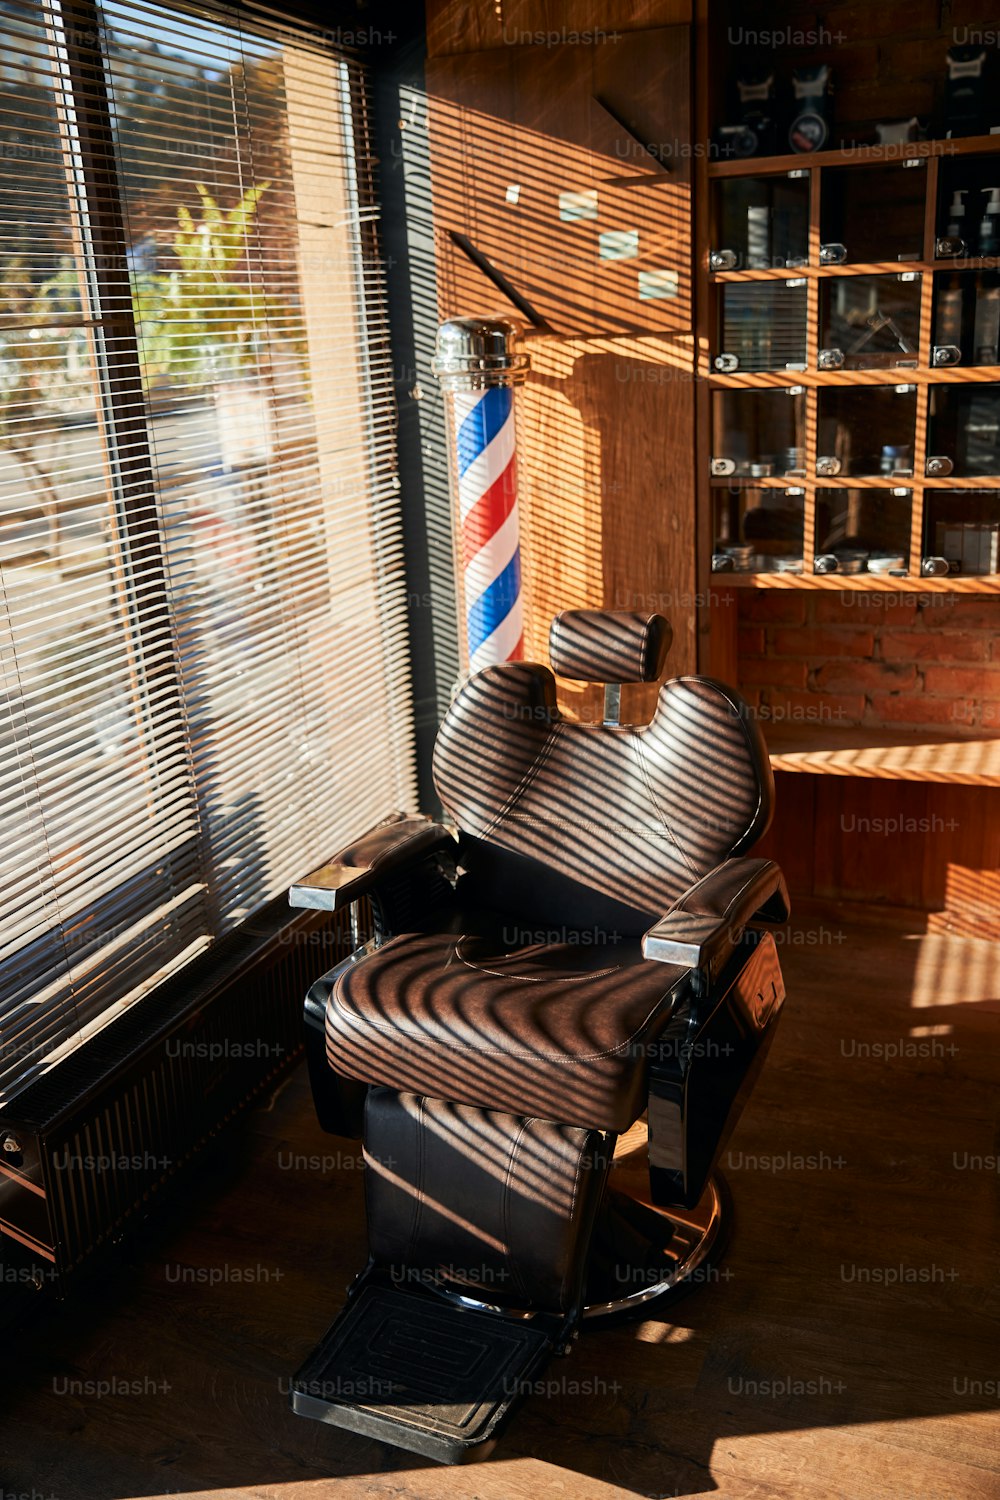 블라인드가 있는 창가에 위치한 조절 가능한 머리 받침이 있는 리클라이닝 갈색 가죽 이발사 의자